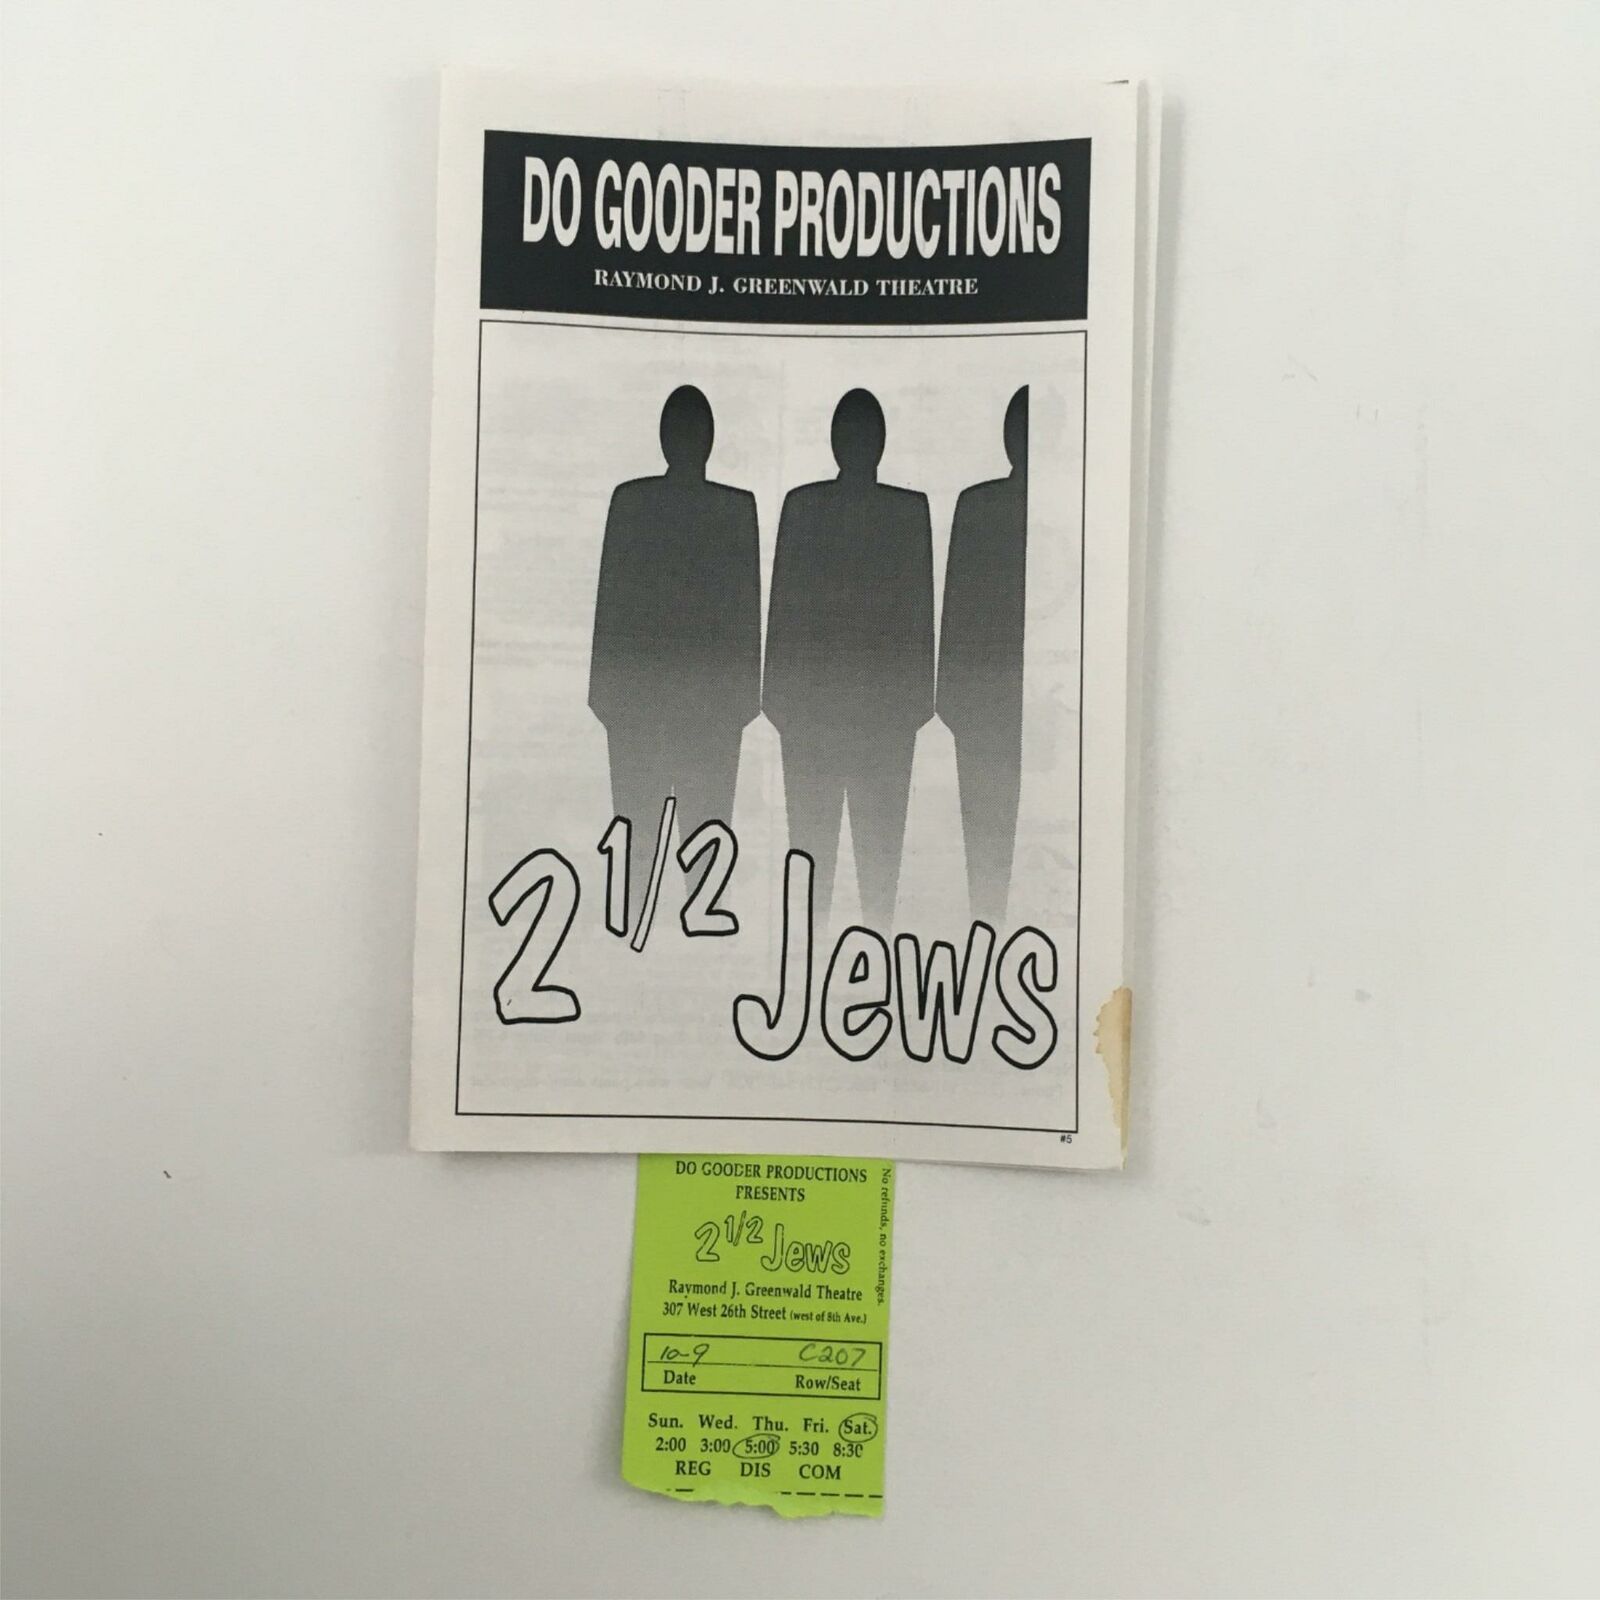 1998 2 1/2 Jews By Alan Brandt, Joe Brancato At Raymond J. Greenwald Theatre